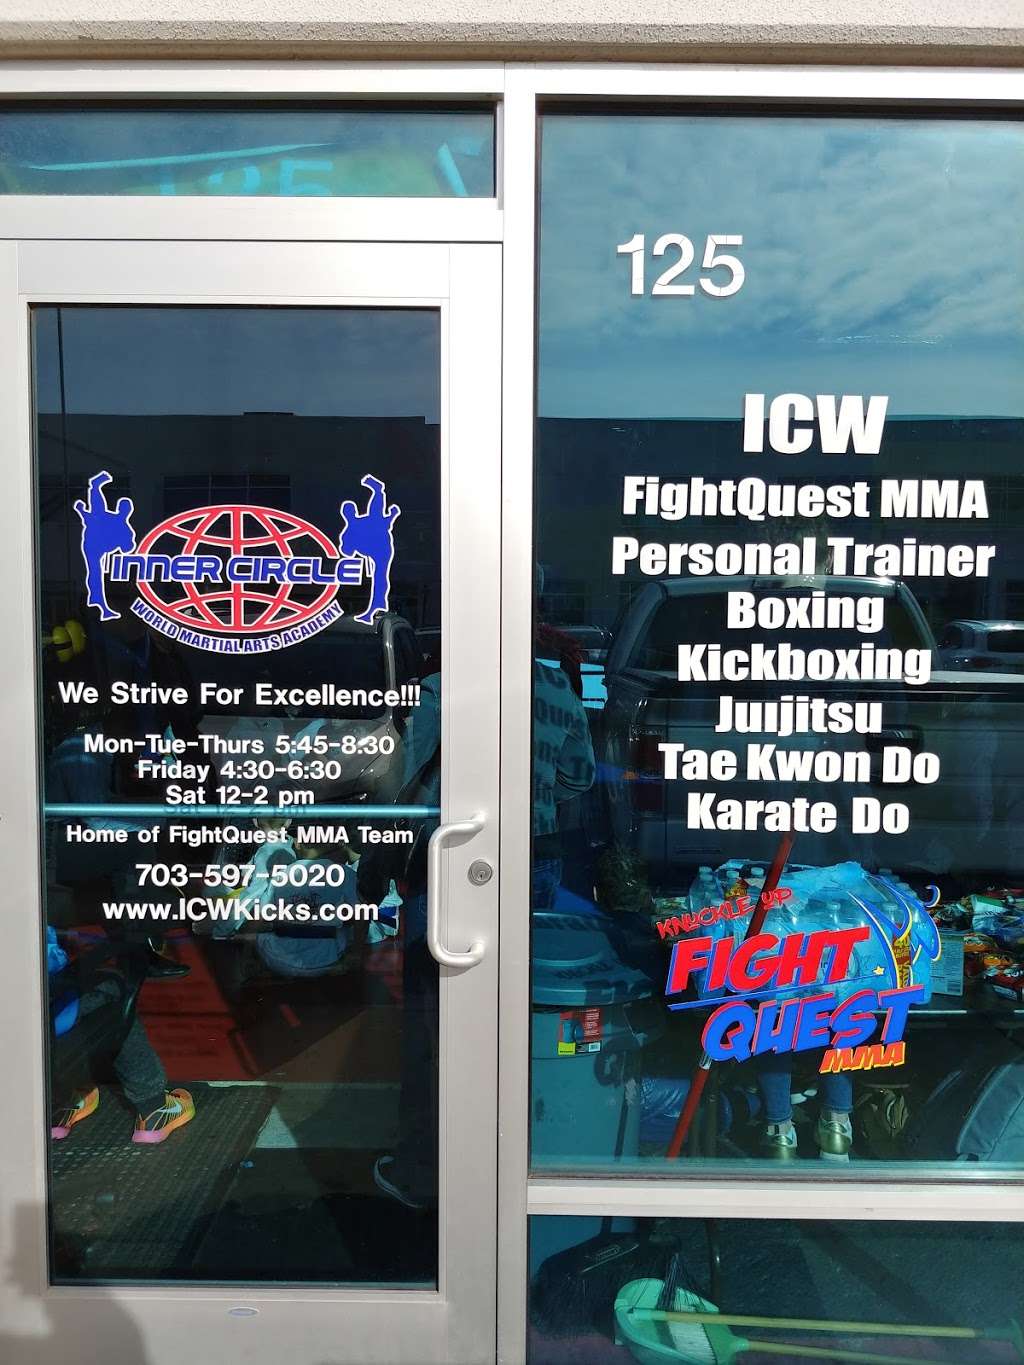 ICW Martial Arts | Suite 125, 25180, Atlantic Blvd, Sterling, VA 20166 | Phone: (703) 597-5020